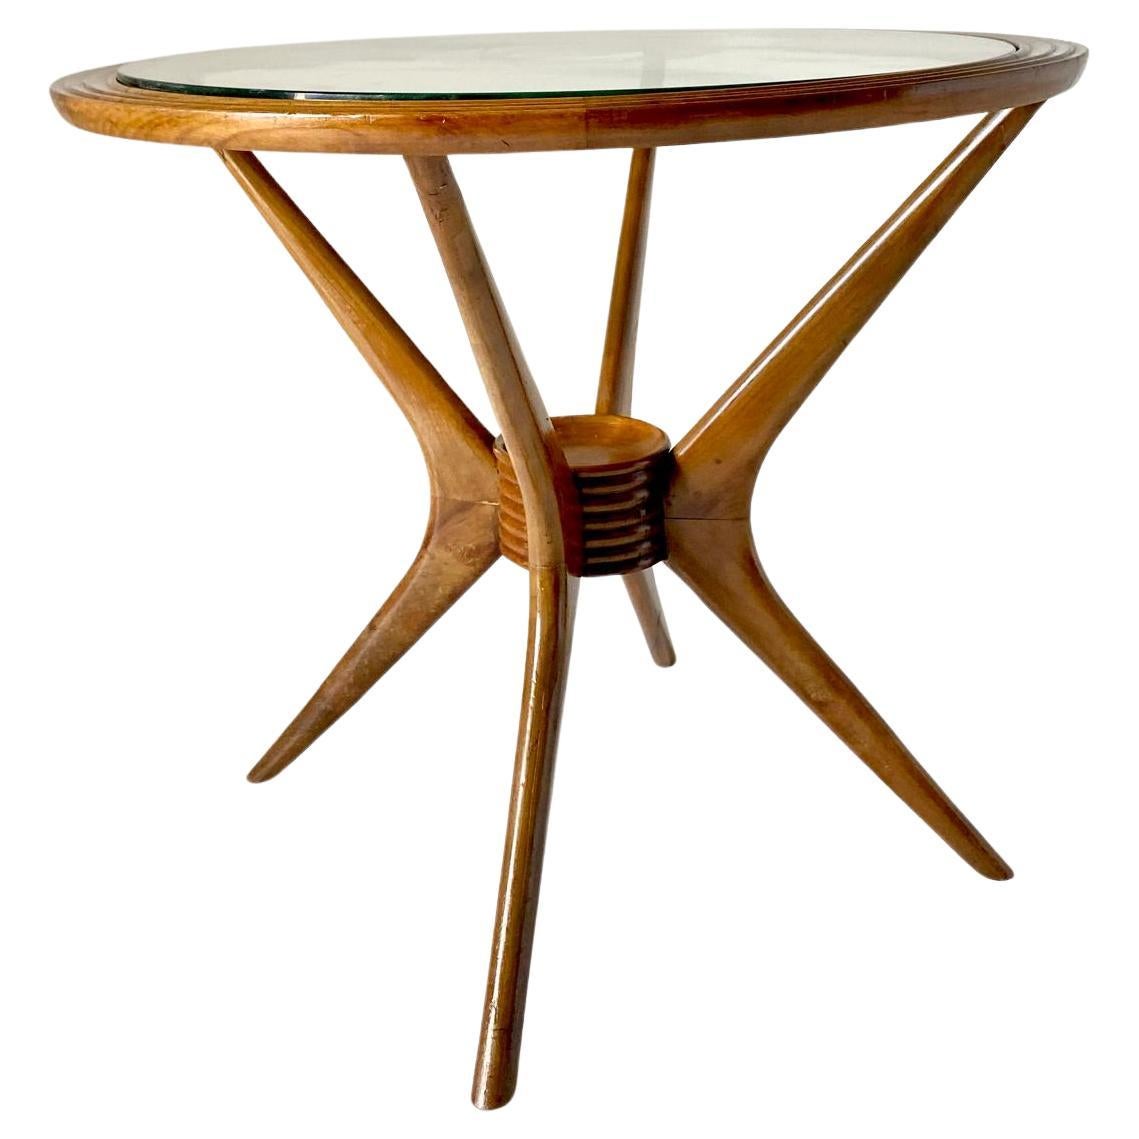 Table basse à pattes d'araignée Paolo Buffa pour Brugnoli, Italie, années 1950

Rare et magnifique table basse à pieds en forme d'araignée conçue par Paolo Buffa pour le fabricant 